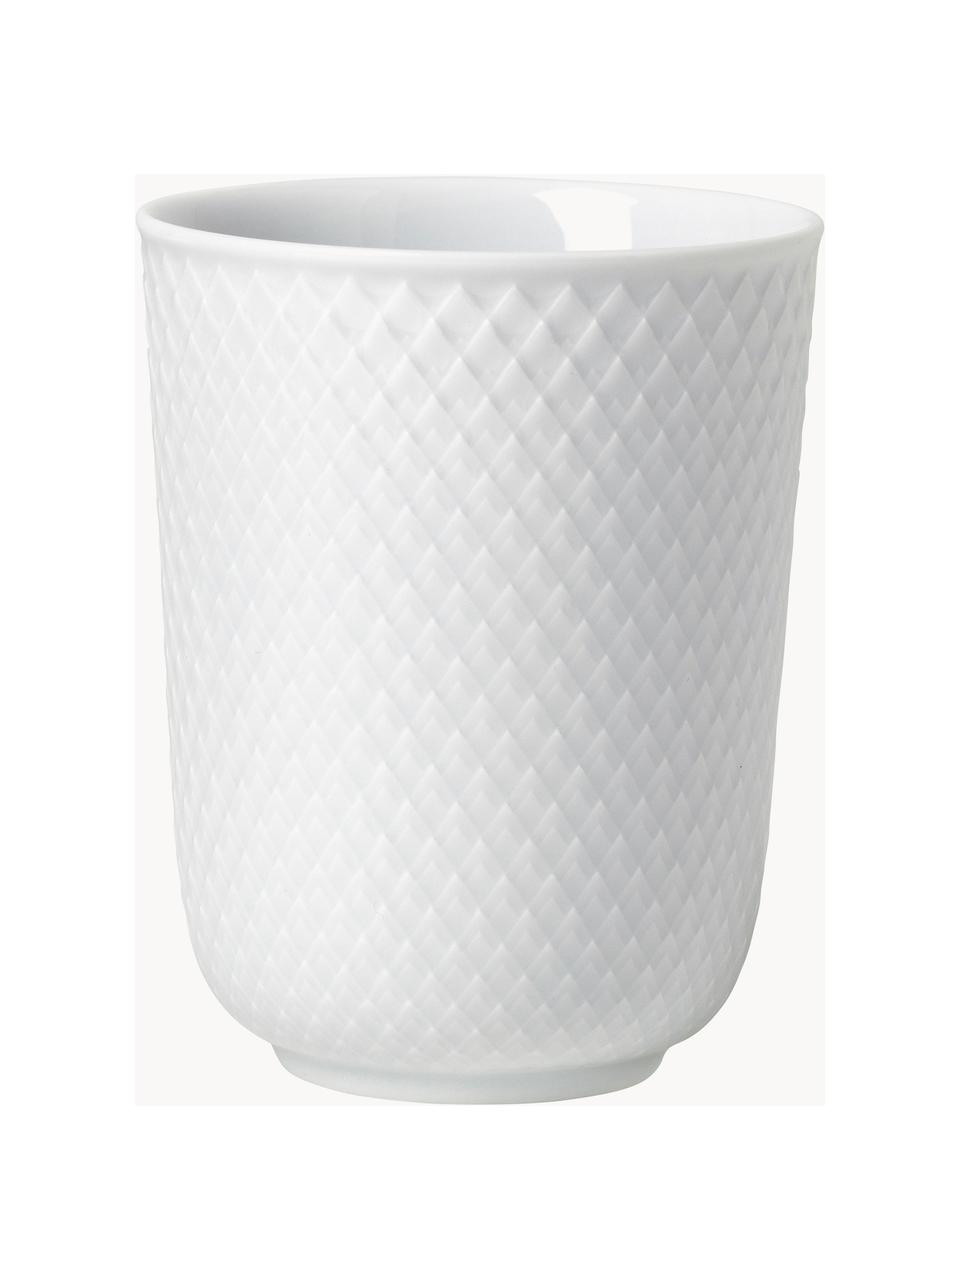 Porzellan-Becher Rhombe mit Struktur-Muster, 4 Stück, Porzellan, Weiss, Ø 9 x H 11 cm, 330 ml